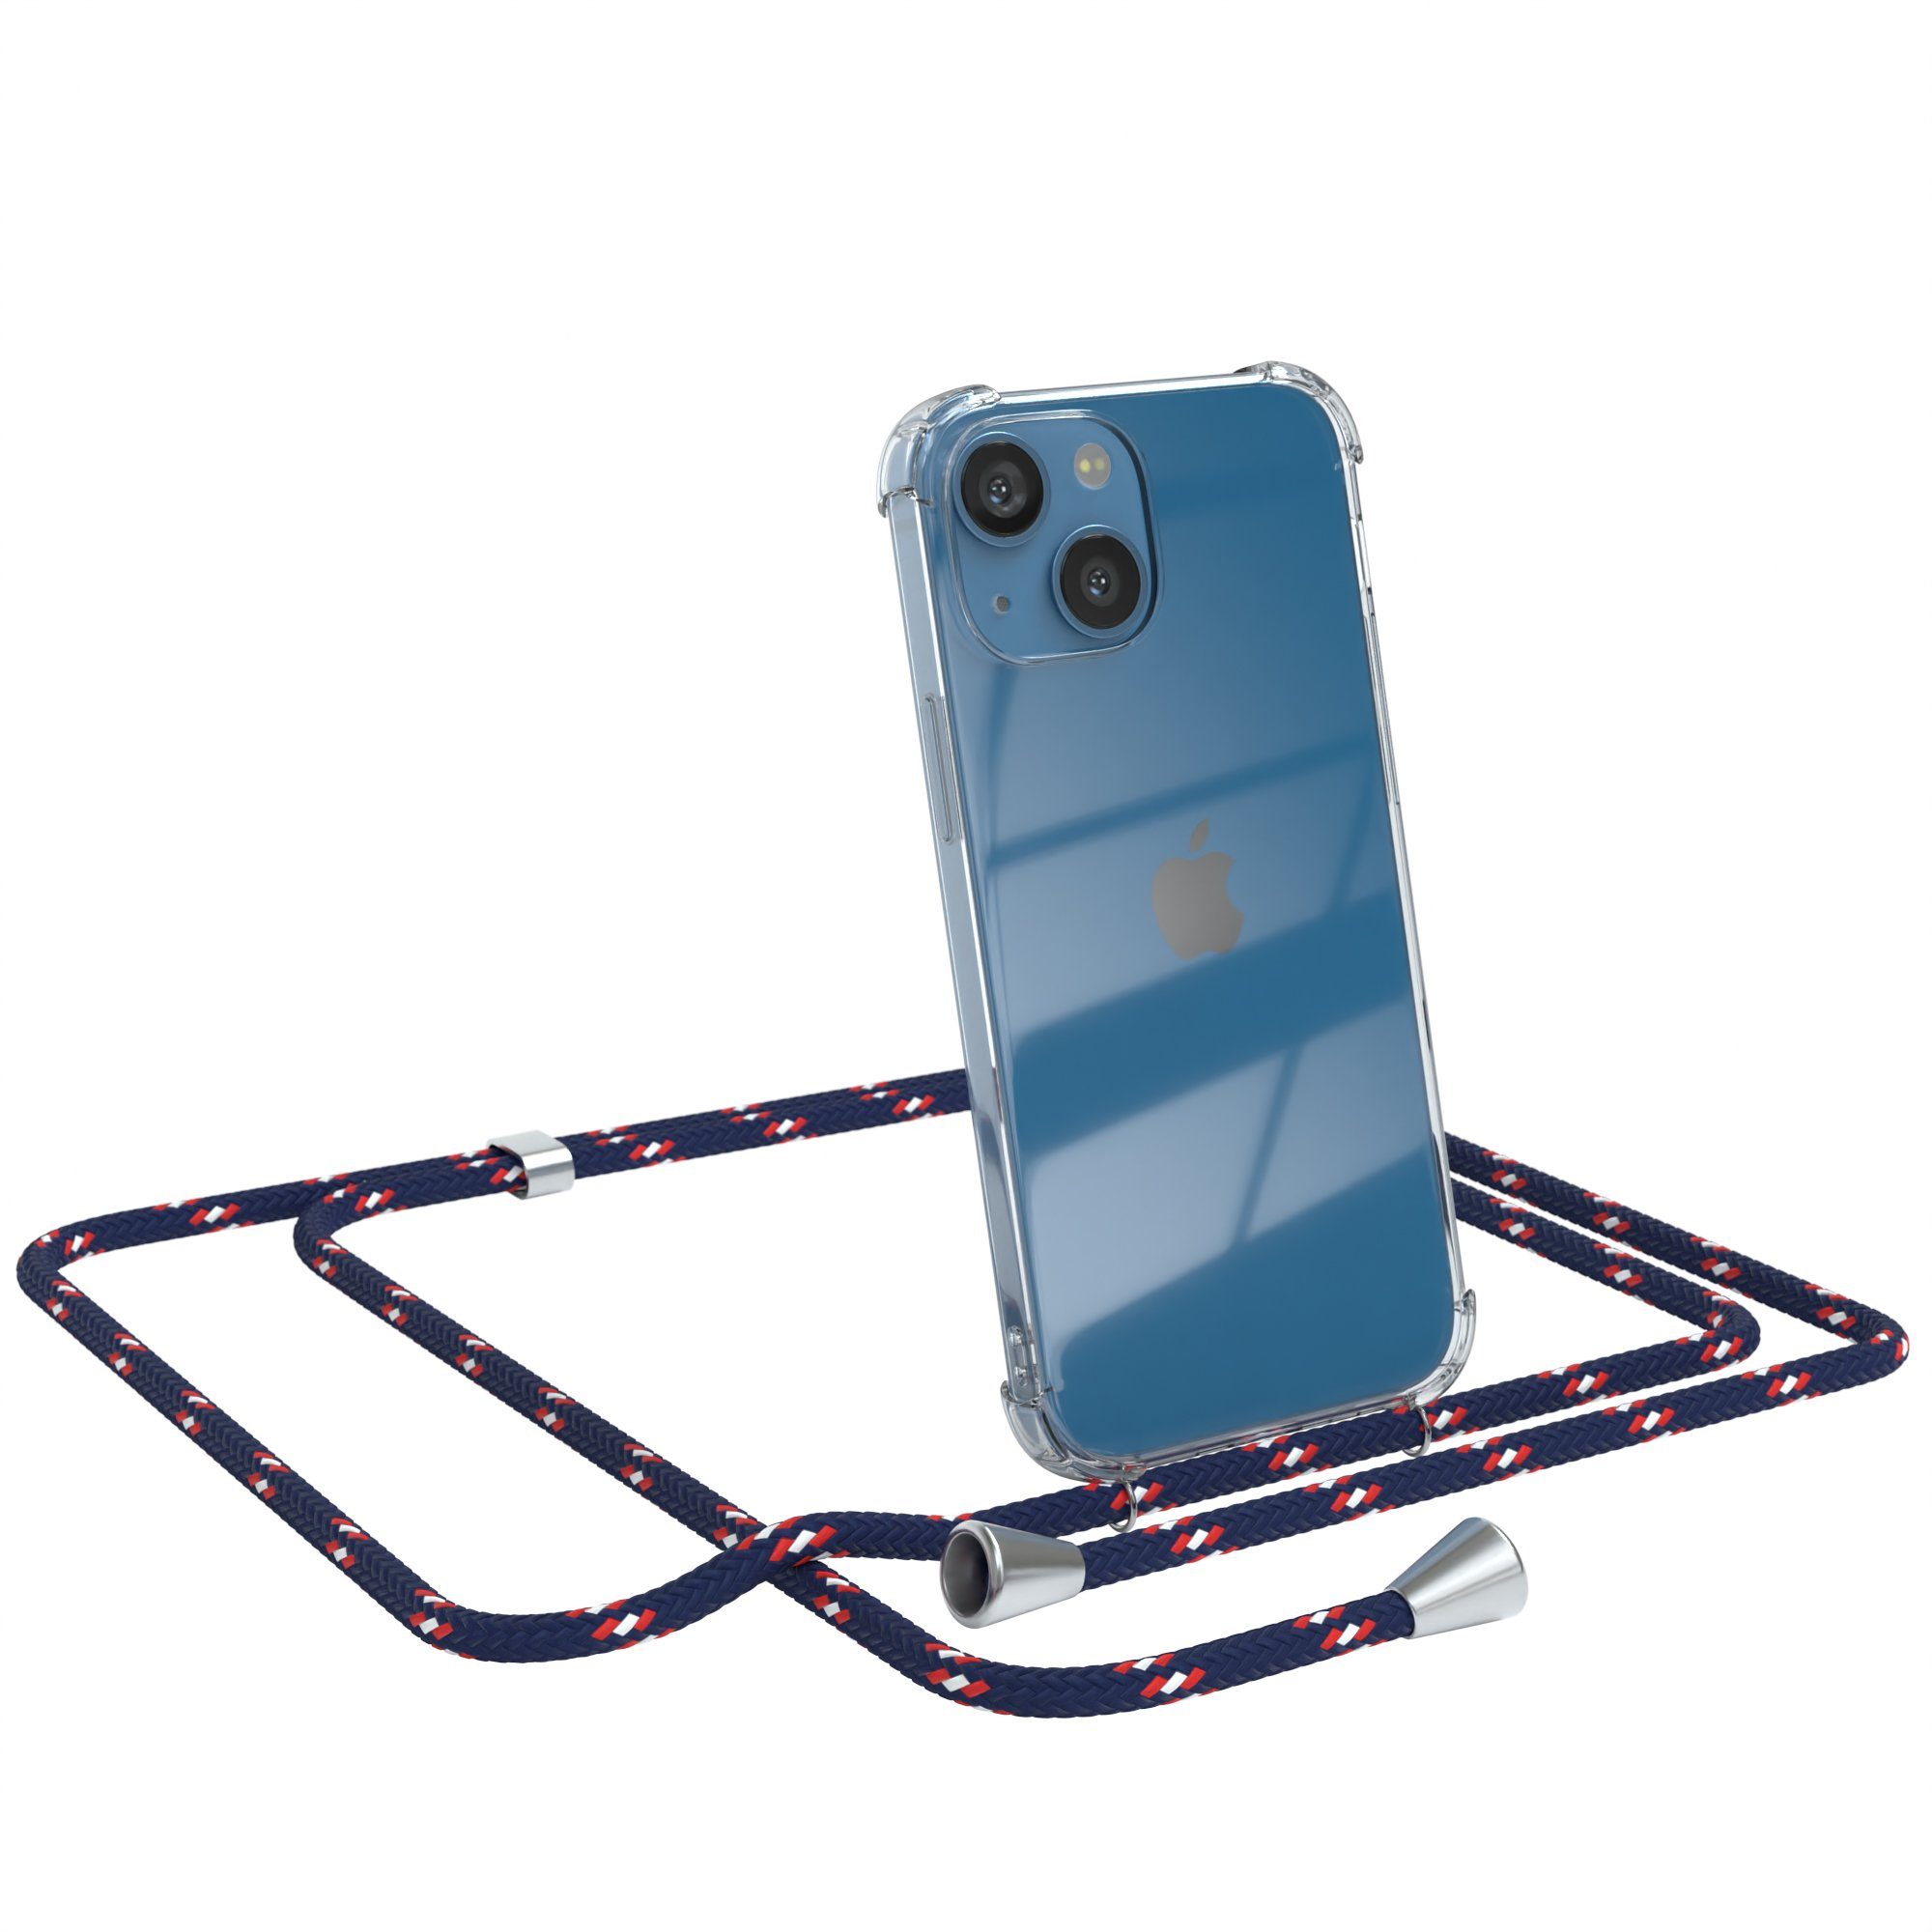 EAZY CASE Handykette Hülle mit Kette für Apple iPhone 13 Mini 5,4 Zoll, Slimcover Handykette Hülle Cross Bag für Smartphone Blau Camouflage